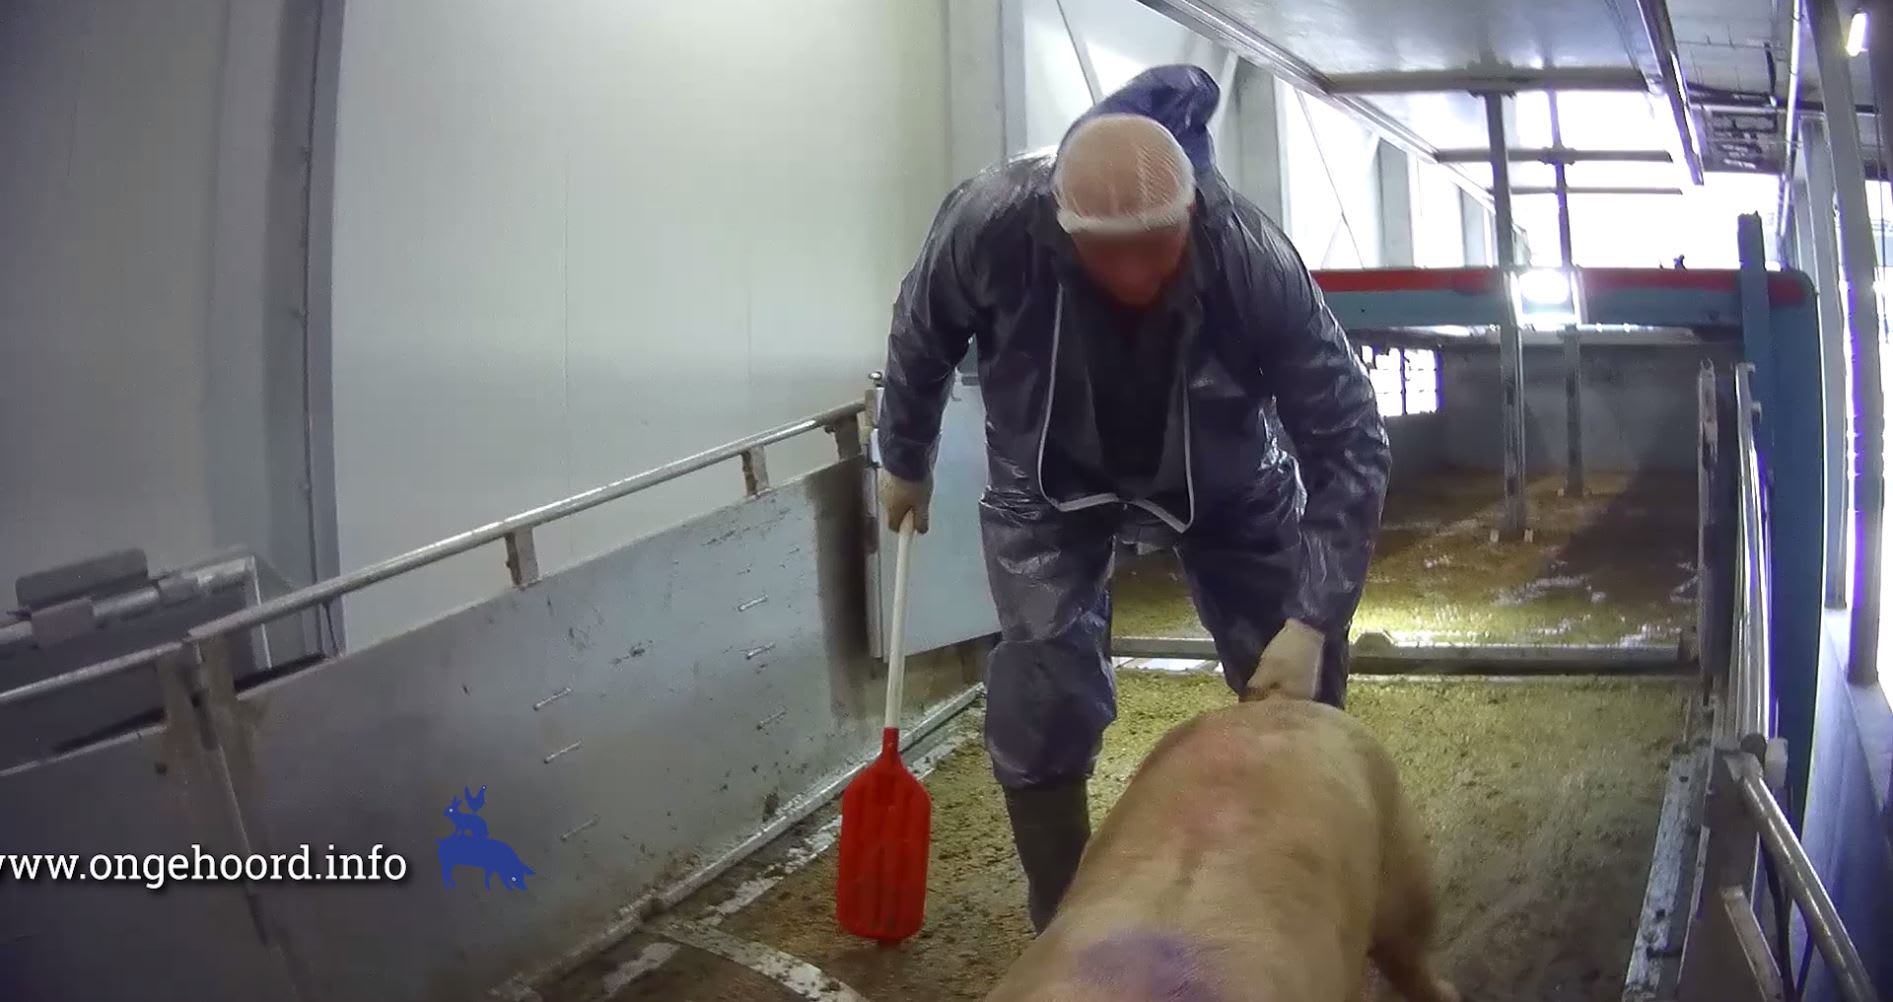 Schokkende beelden: varkens in slachthuis worden geslagen en aan staart getrokken